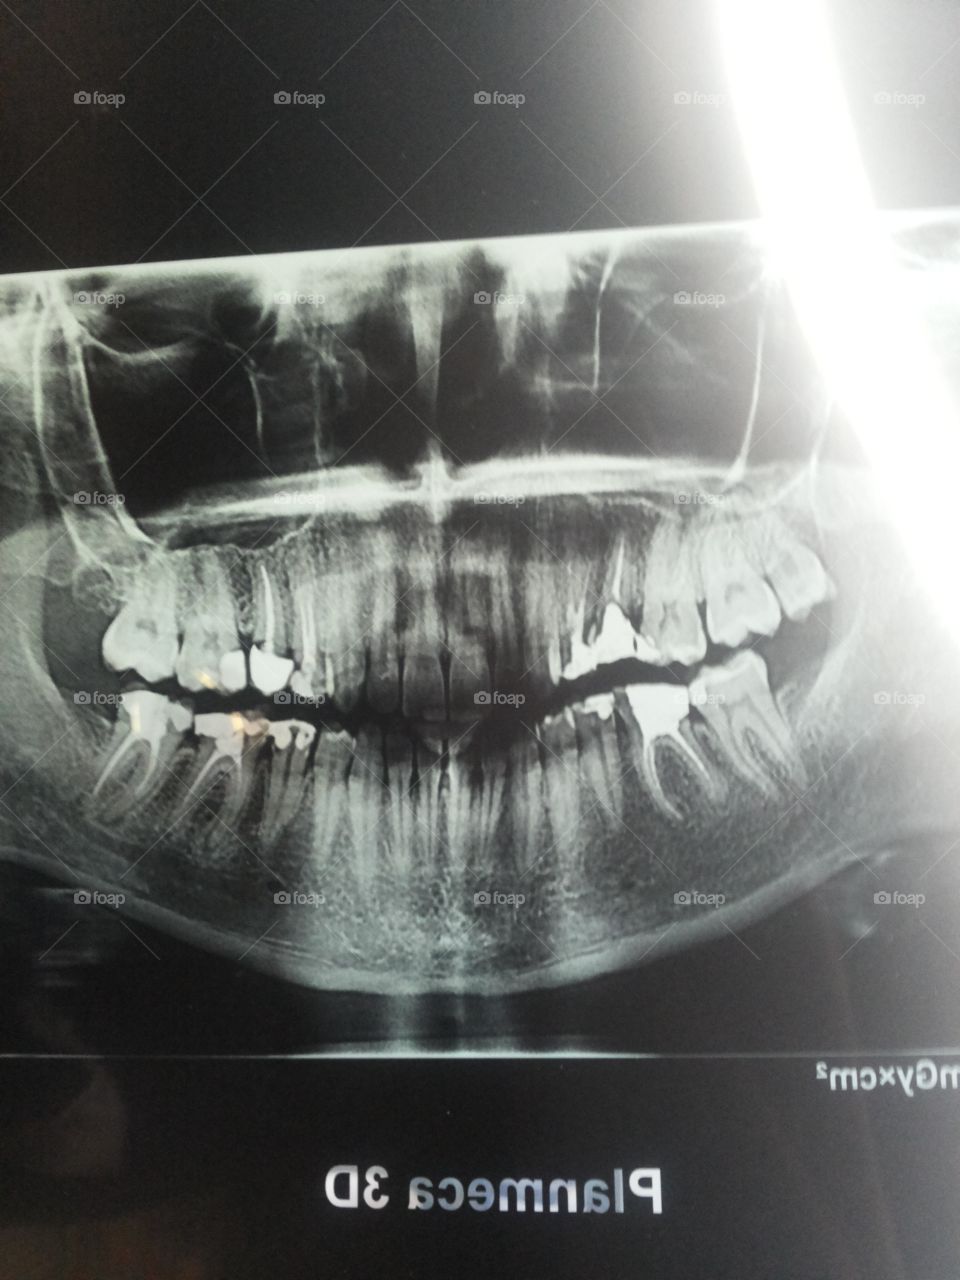 rentgen photo of teeth